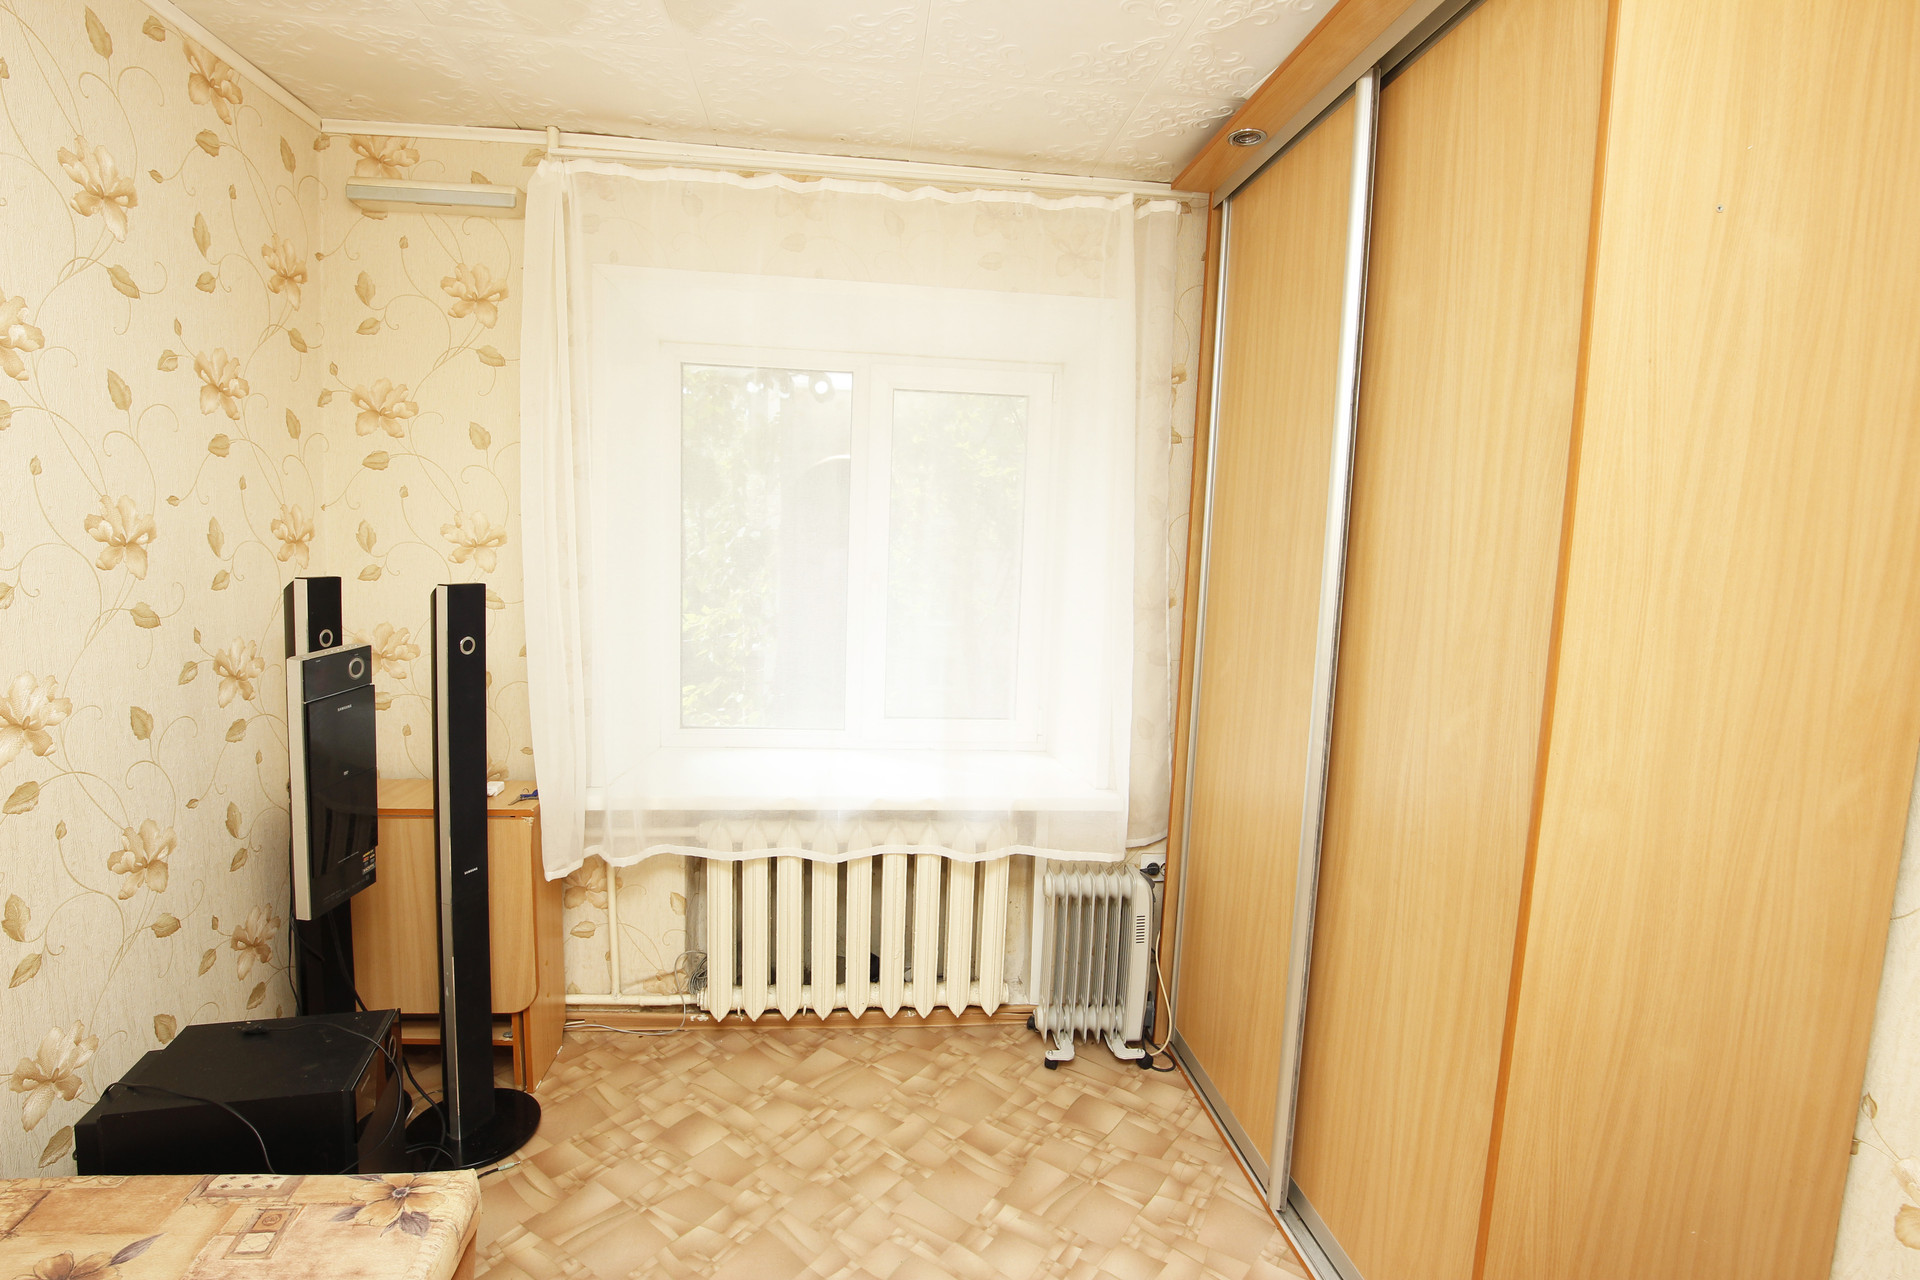 Однокомнатная квартира в Ульяновске. Вид из окна при угловых квартирах. Купить 1 комнатную в ульяновске недорого